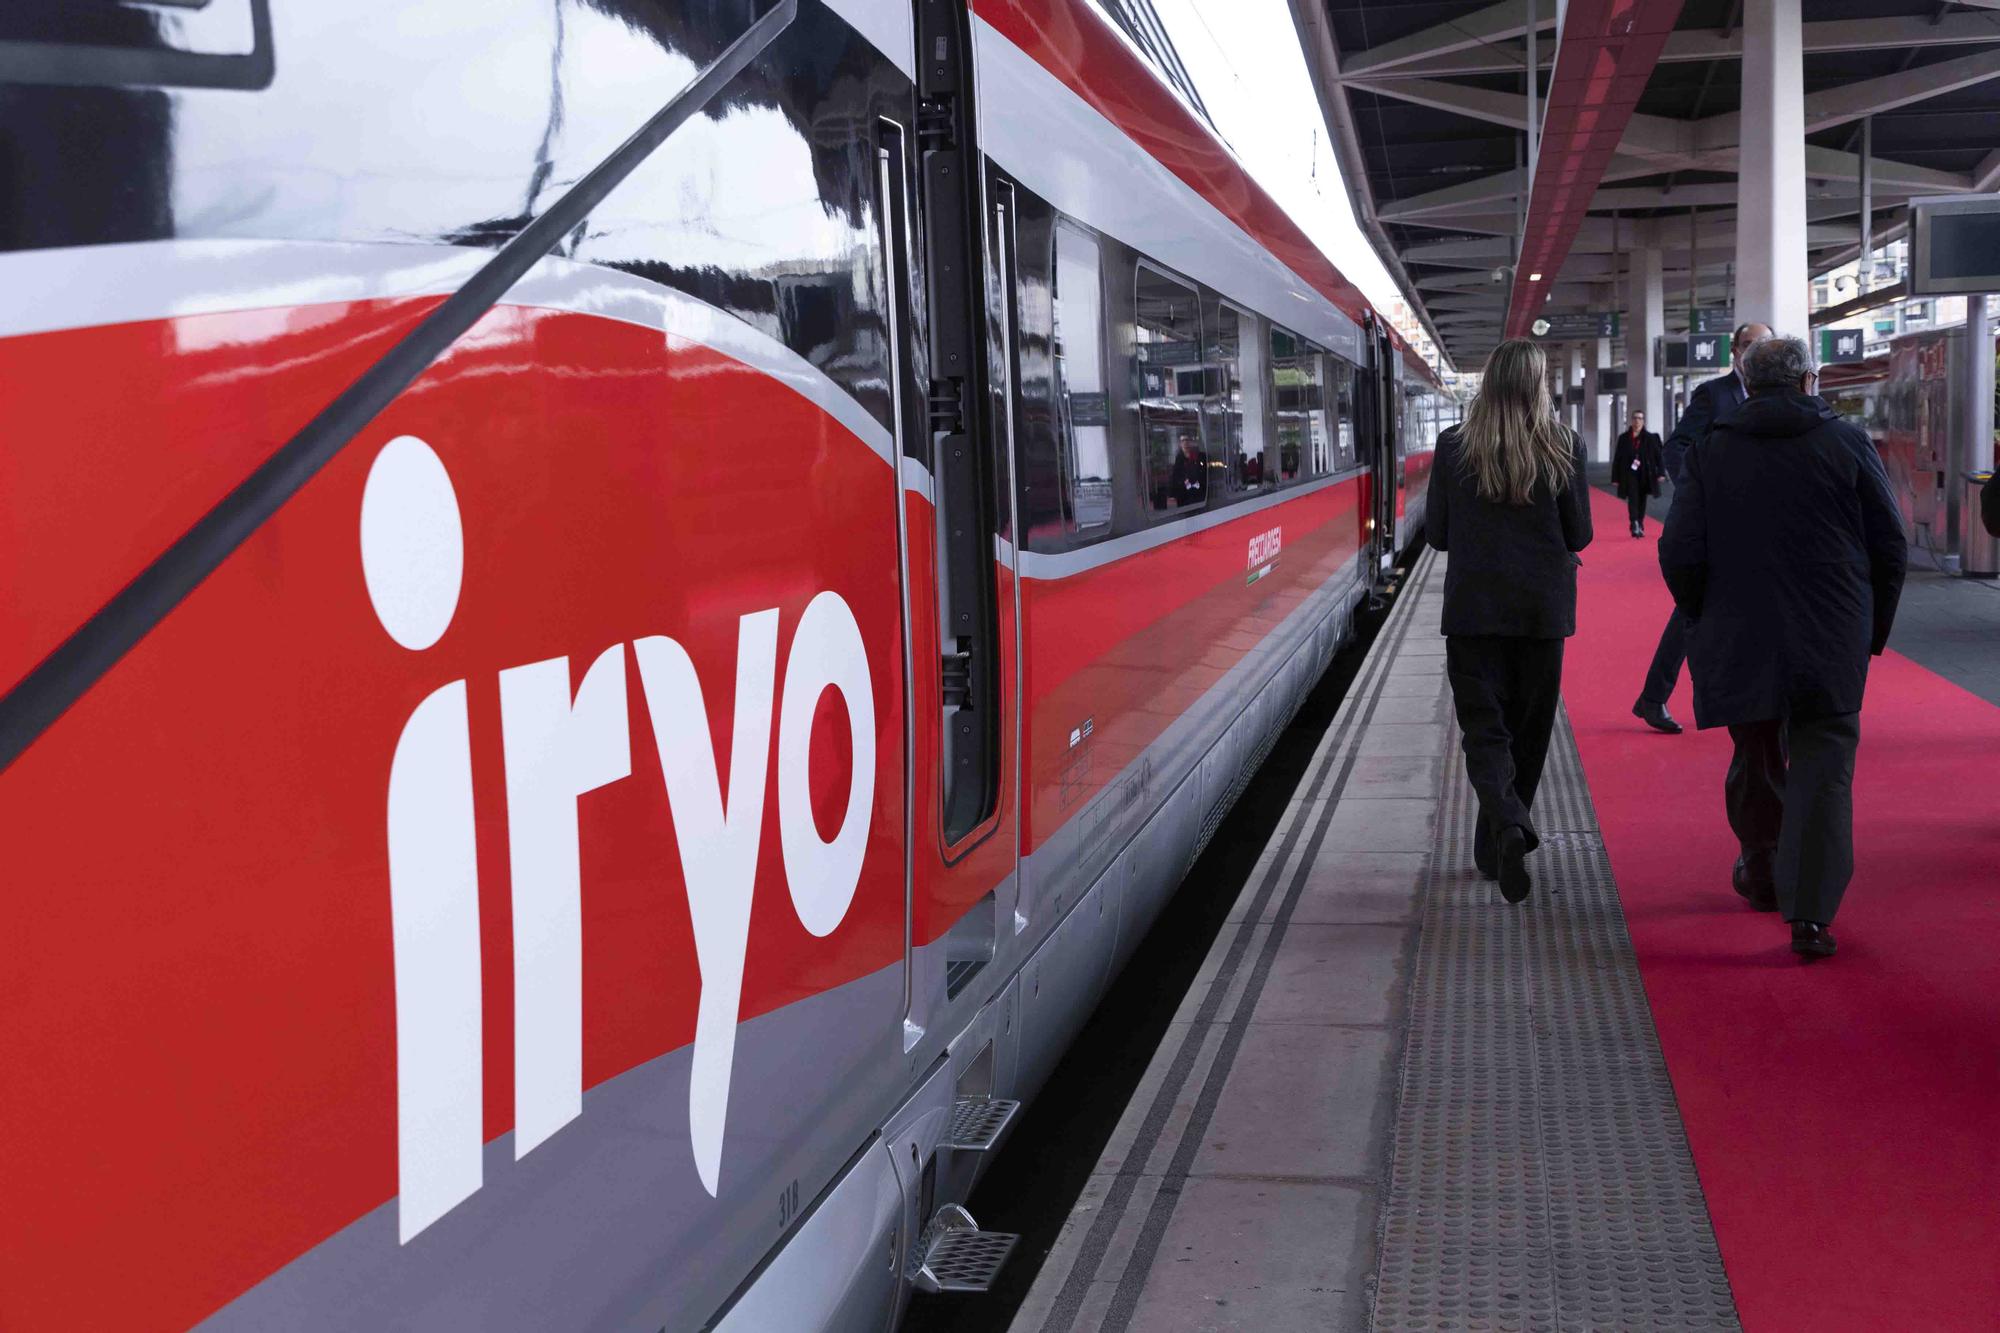 Iryo llega puntual en el viaje inaugural Madrid-València que comenzará a operar el 16 de diciembre